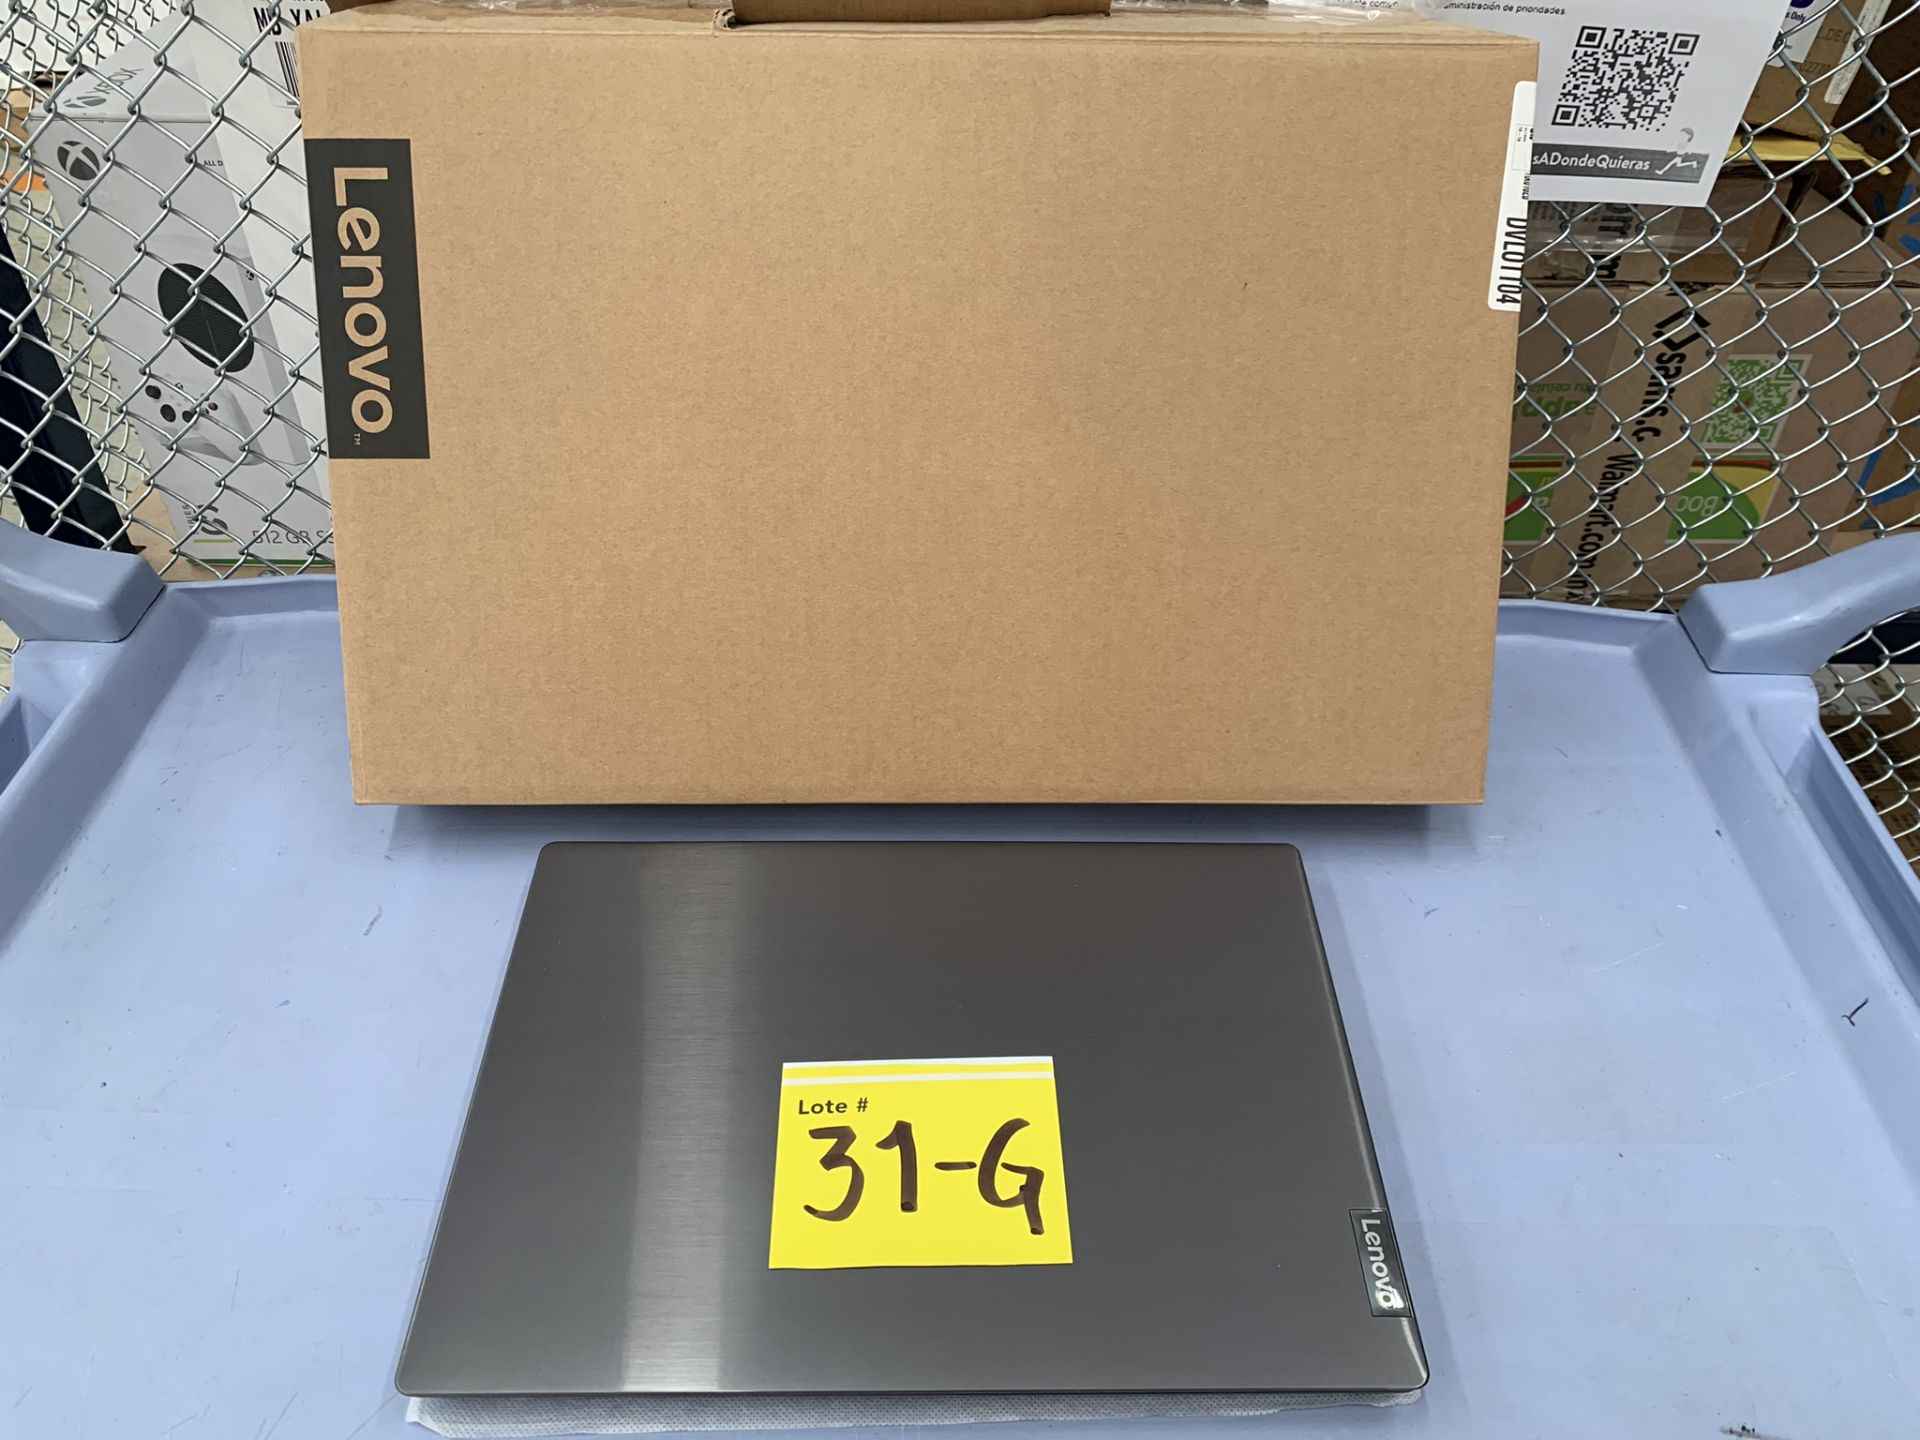 Lote De 2 Laptops Contiene: 1 Laptop Marca Lenovo Modelo 82c6, Serie PF37C7ZK, Color Gris, Proc